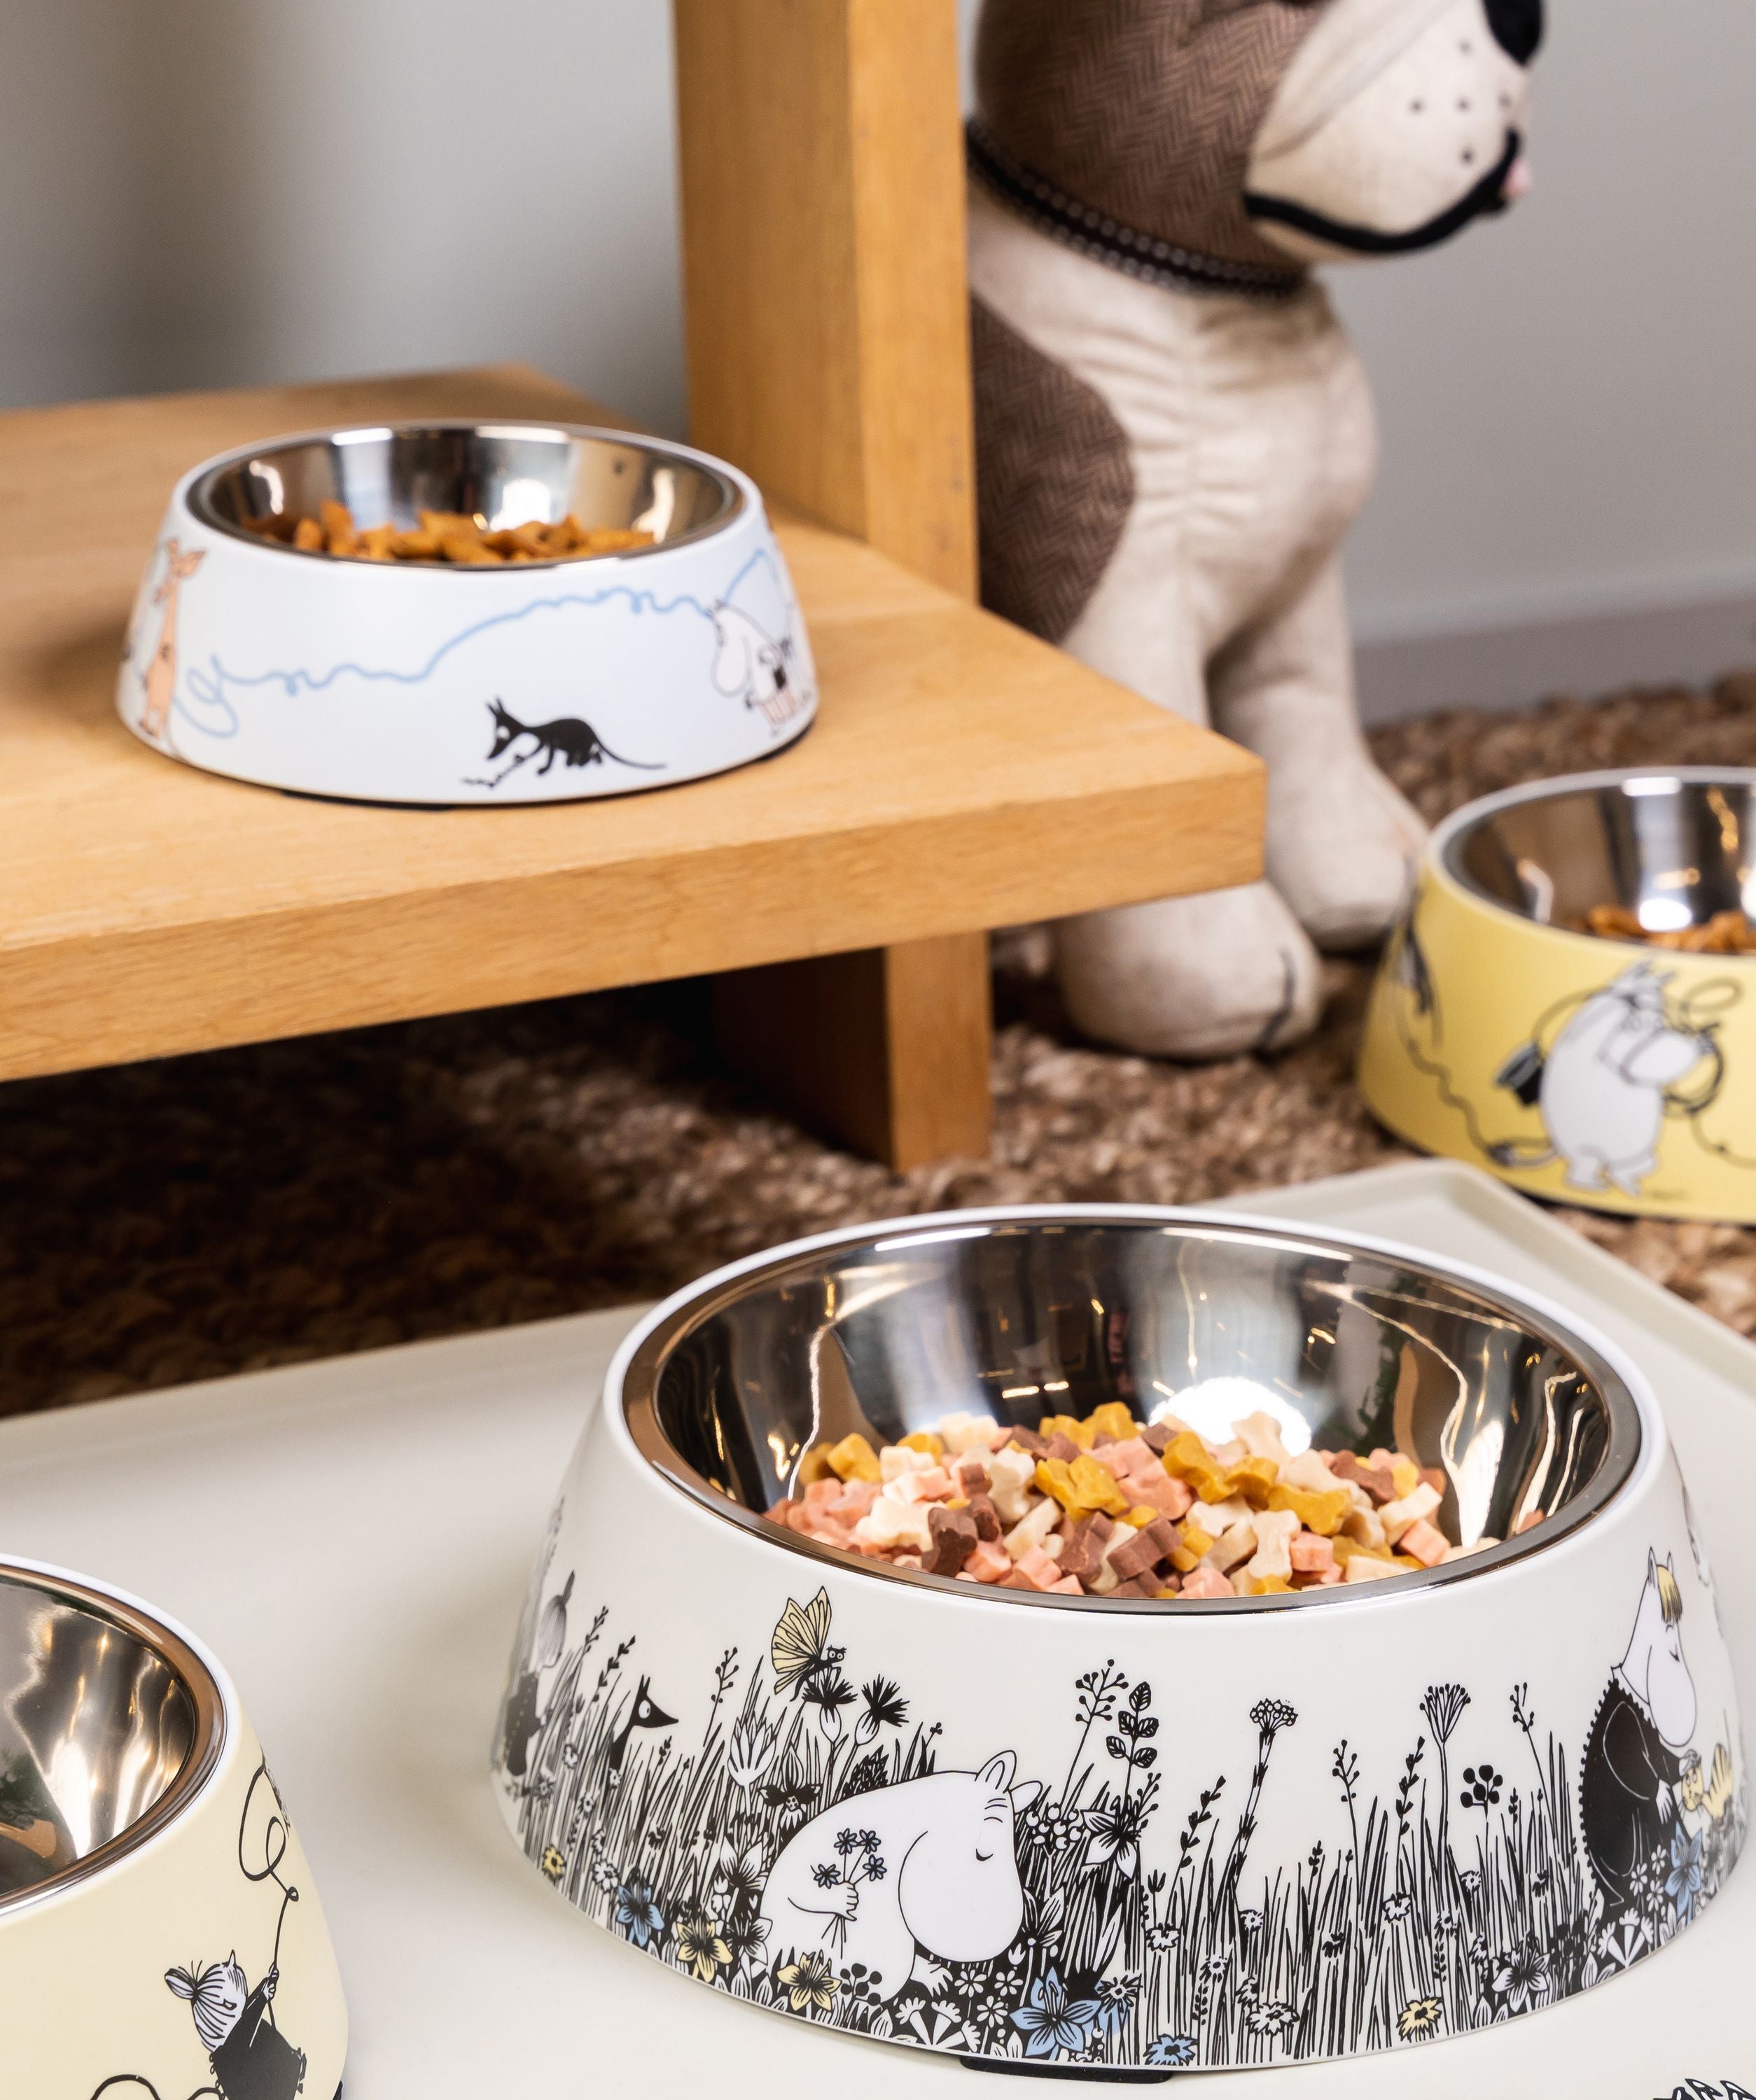 Muurla Moomin Pets Pets Food Bowl S, Blue